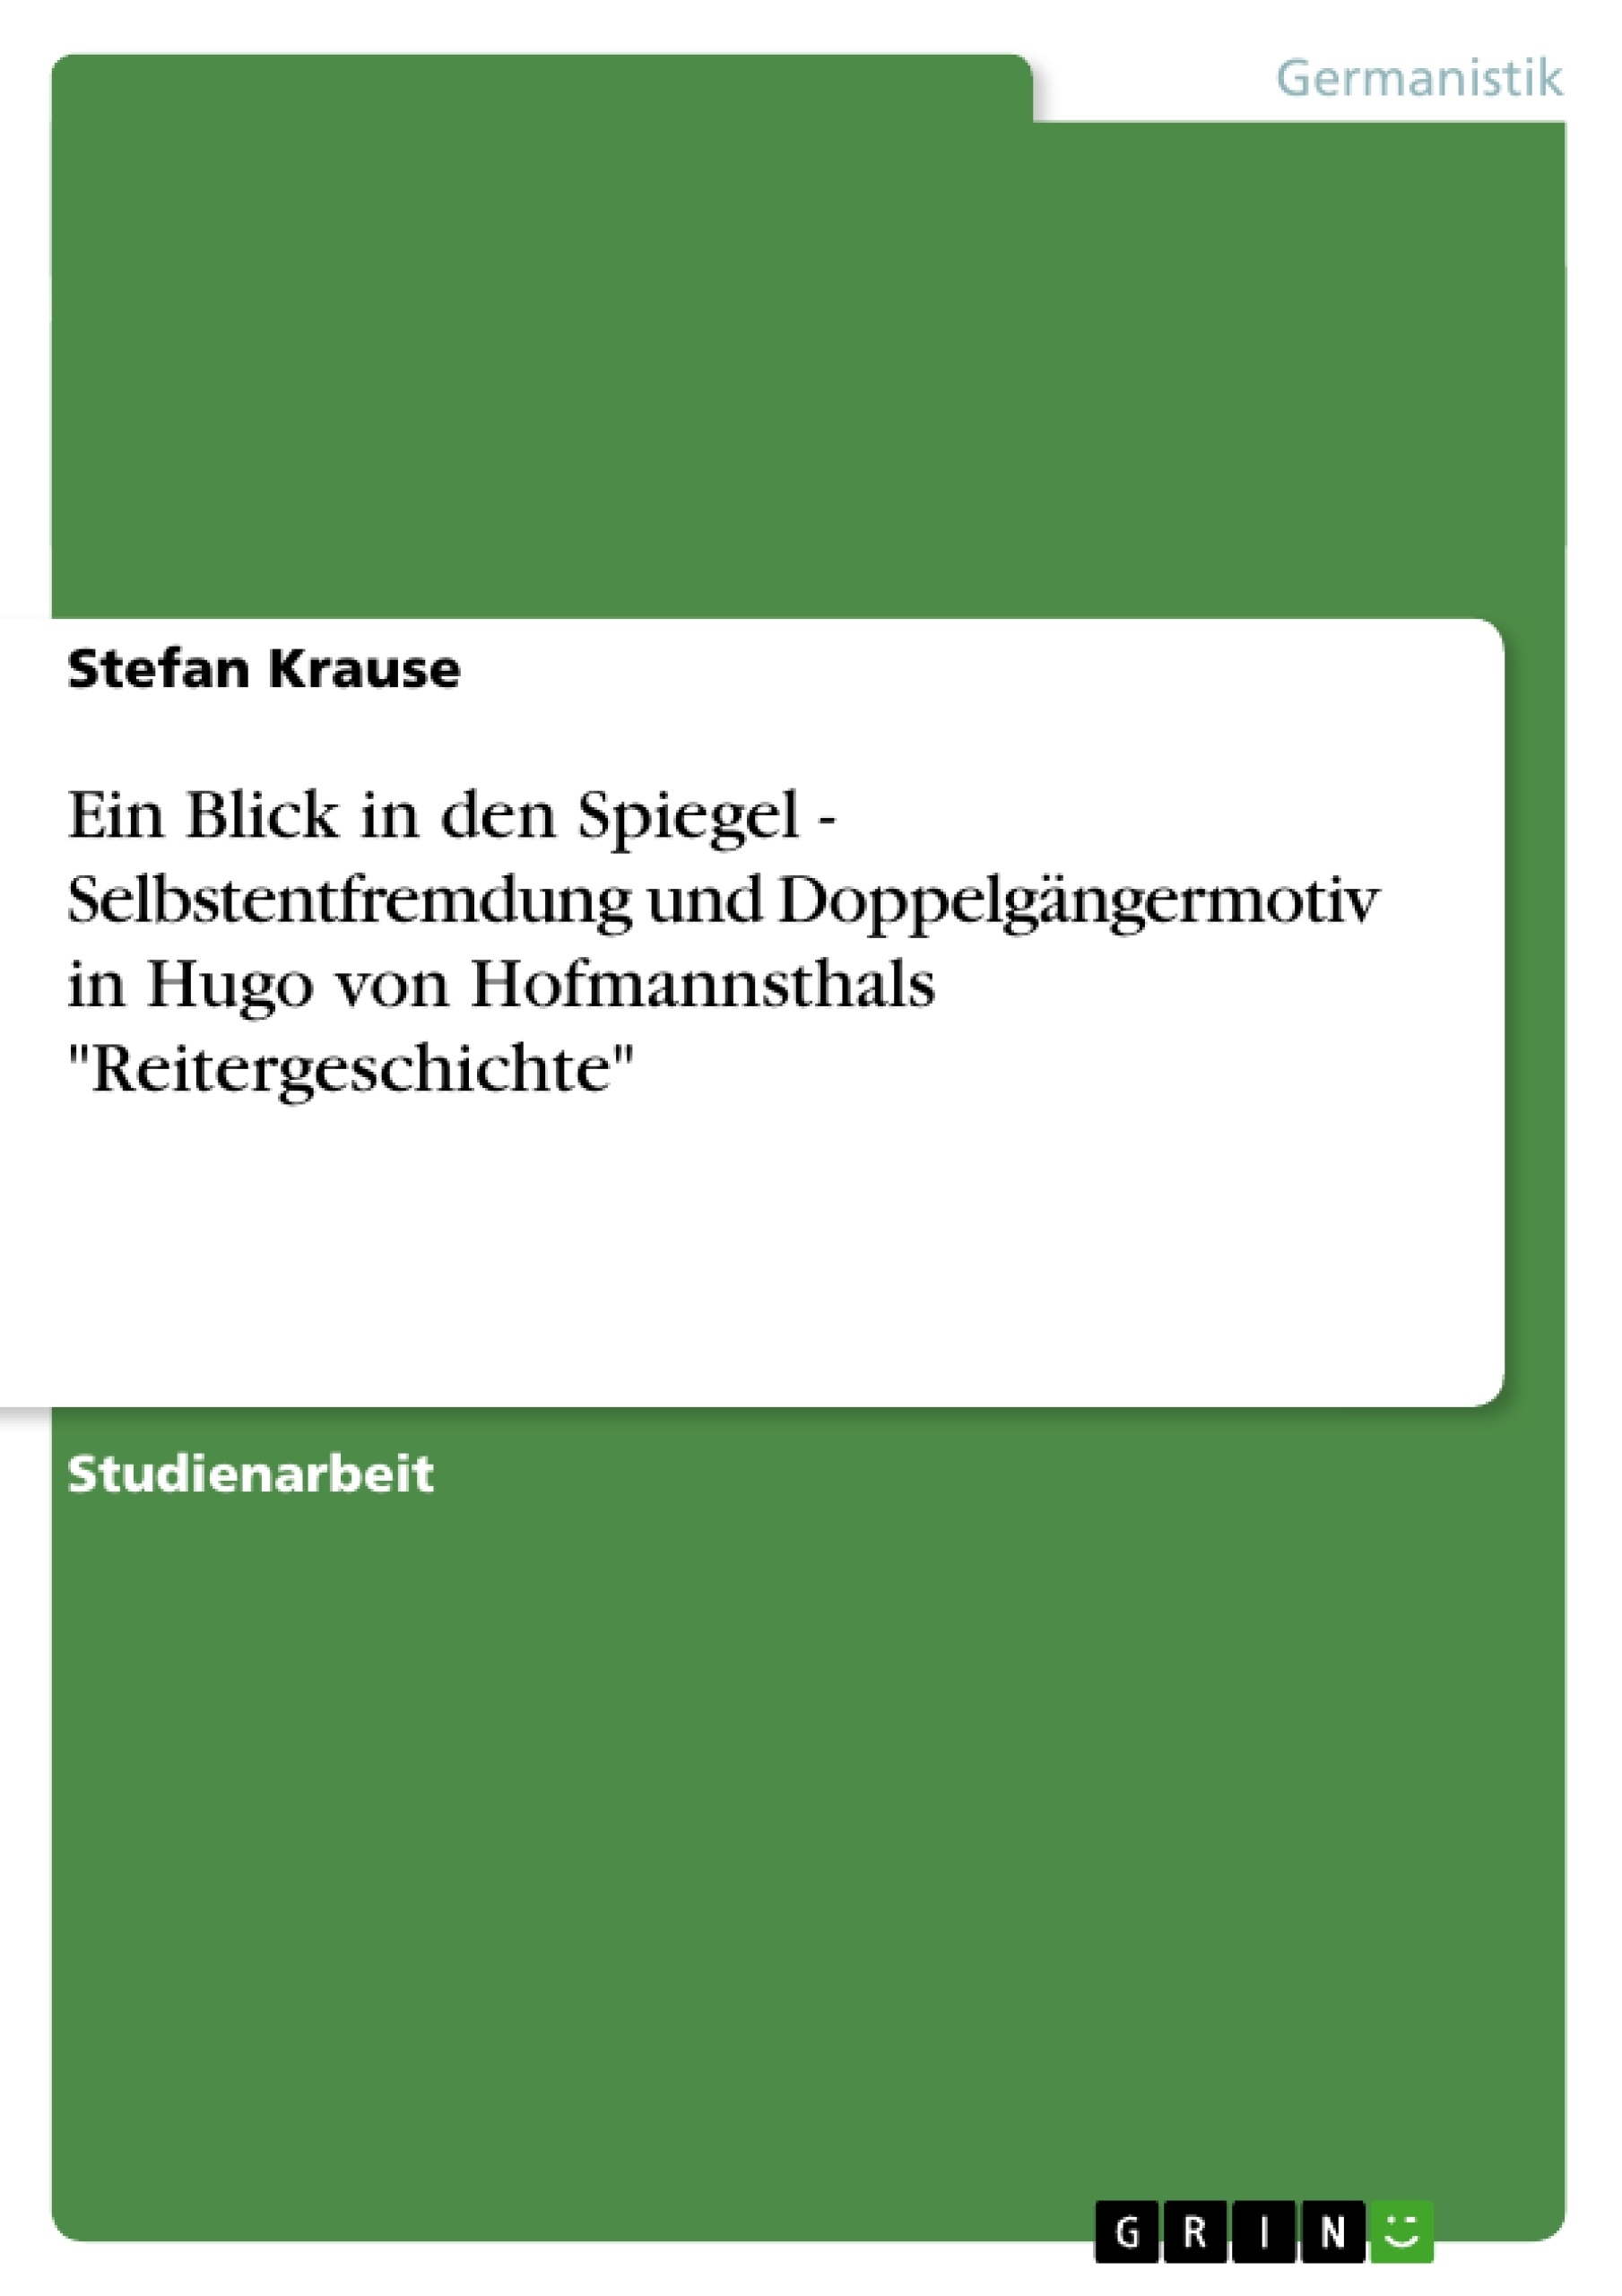 Titel: Ein Blick in den Spiegel - Selbstentfremdung und Doppelgängermotiv in Hugo von Hofmannsthals "Reitergeschichte"